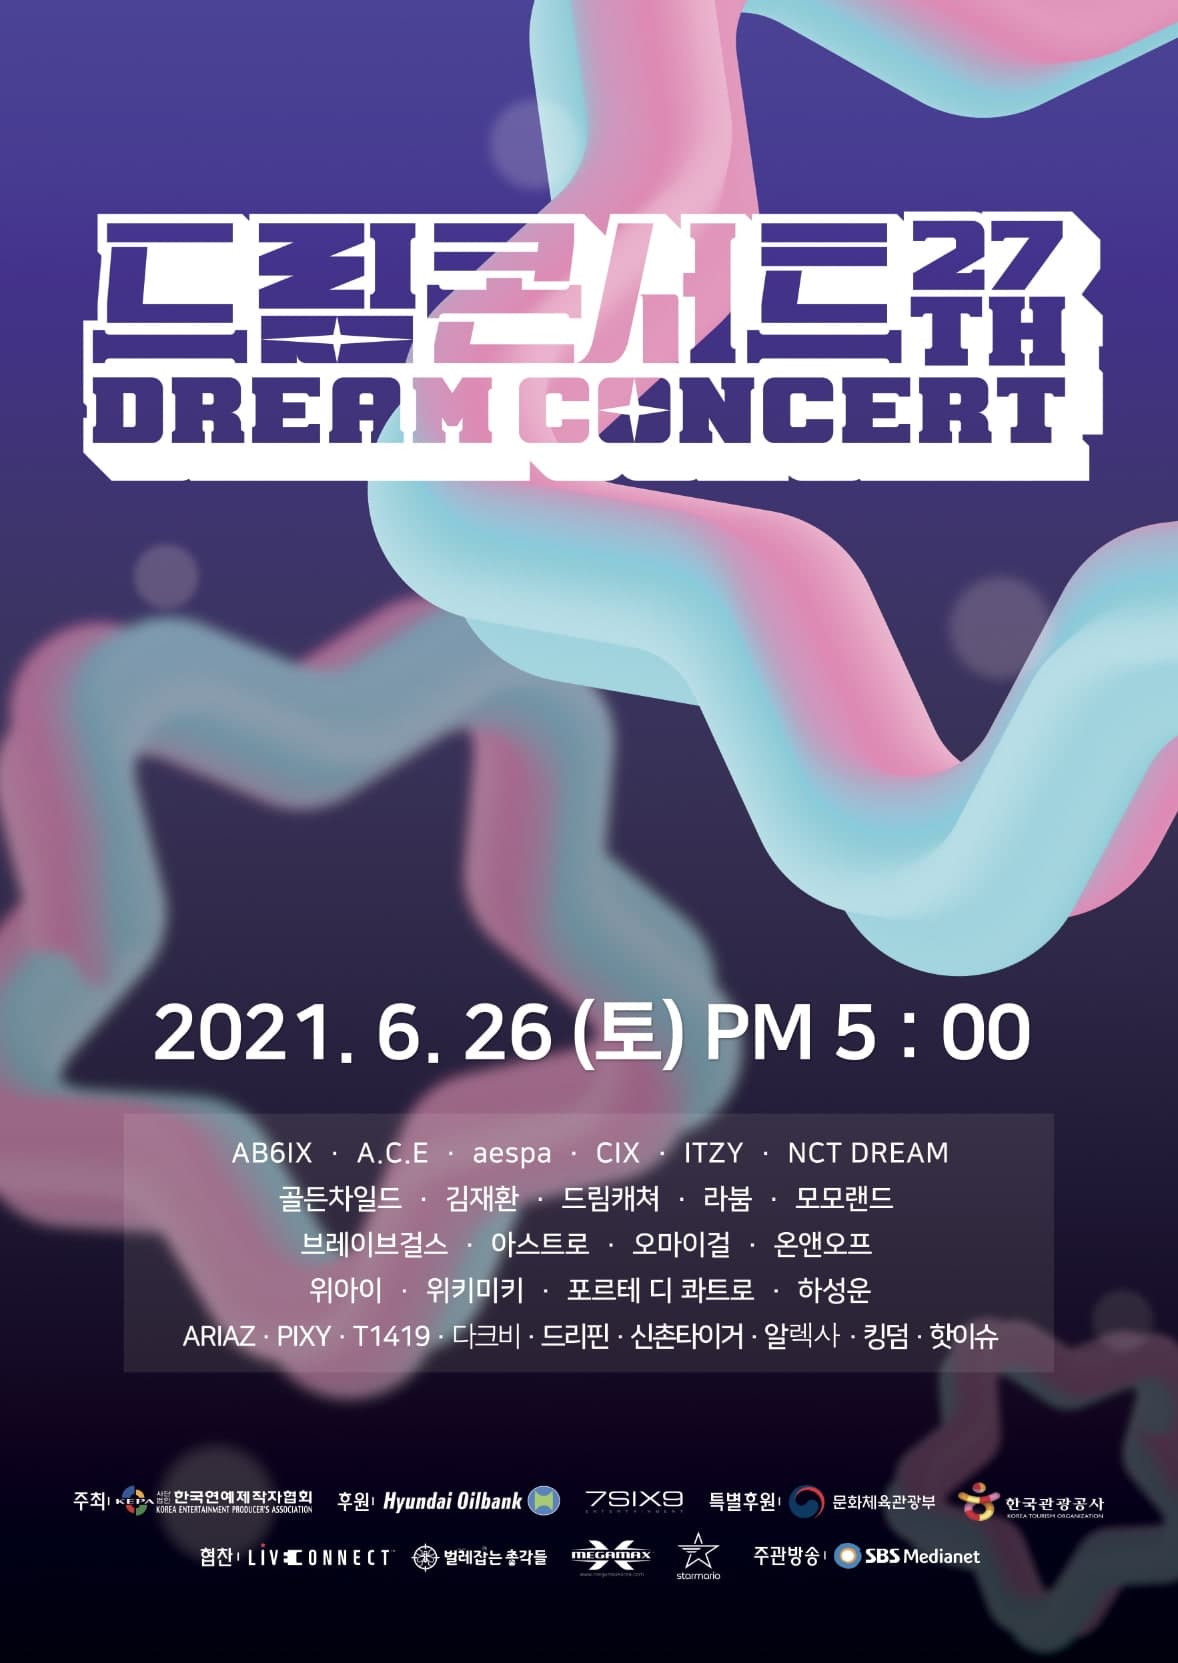 2021 Dream Concert